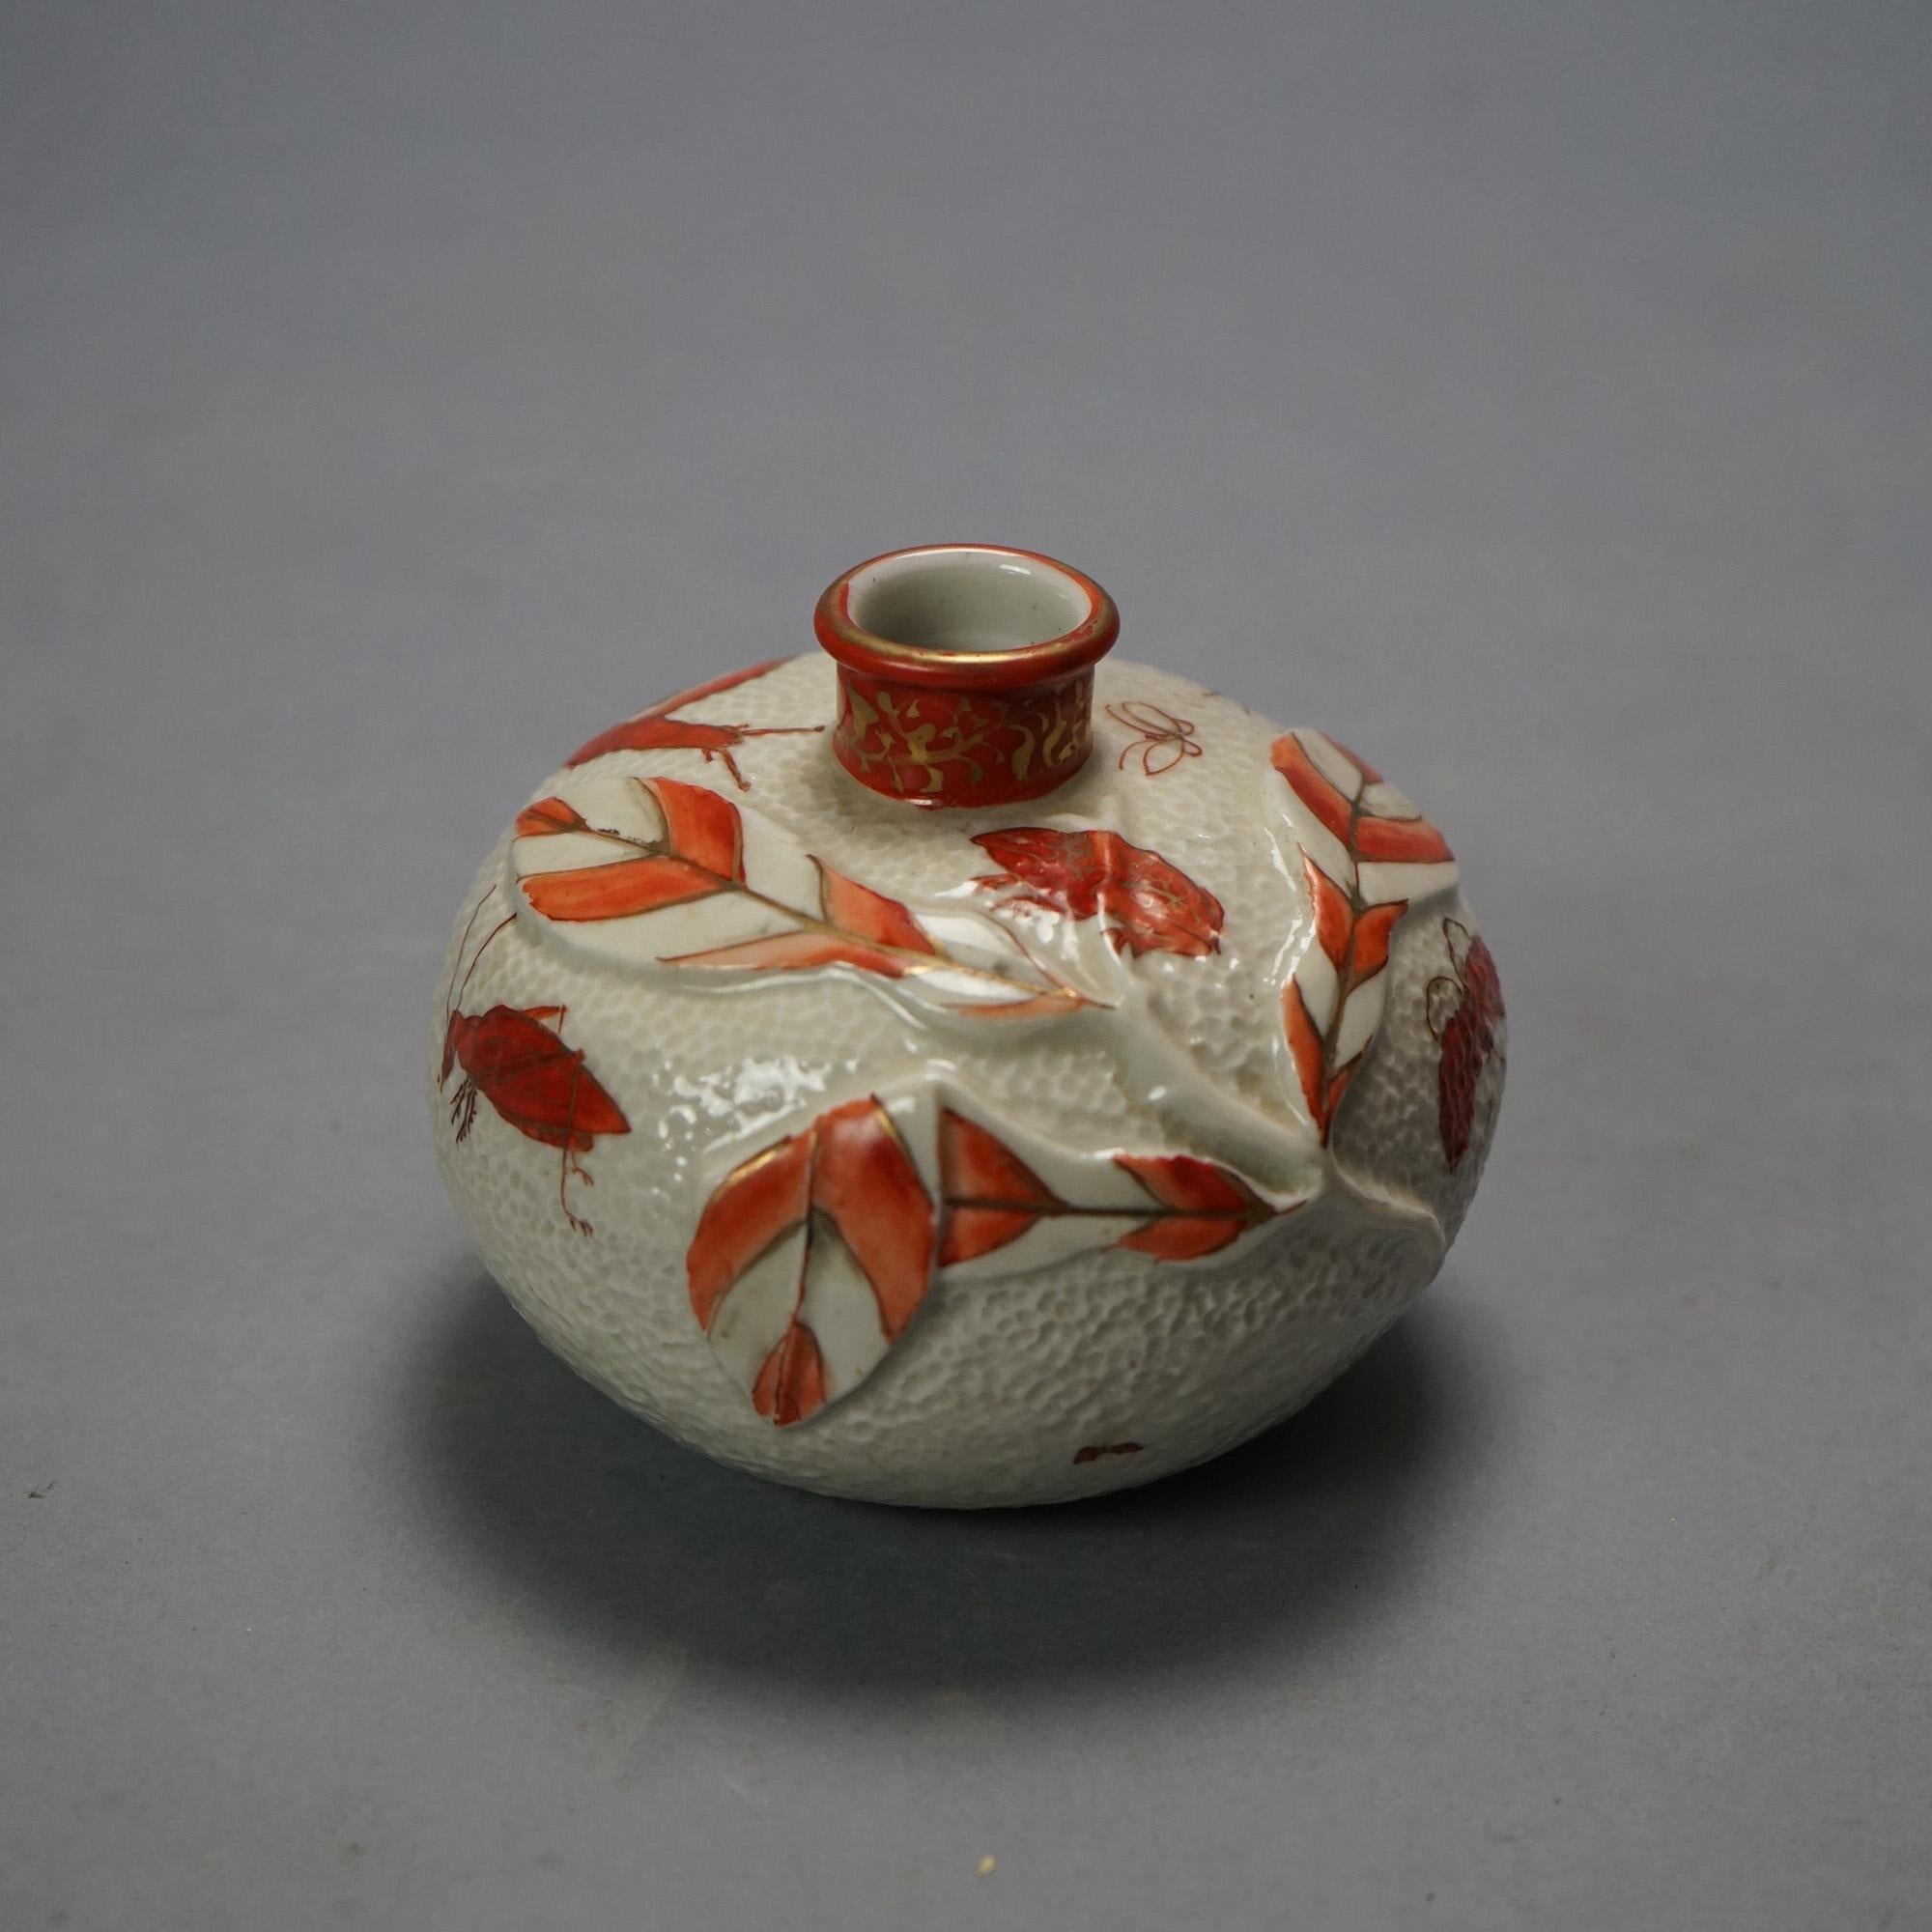 Four Antique Japanese Satsuma Porcelain Vases C1920

Measures - 3.5